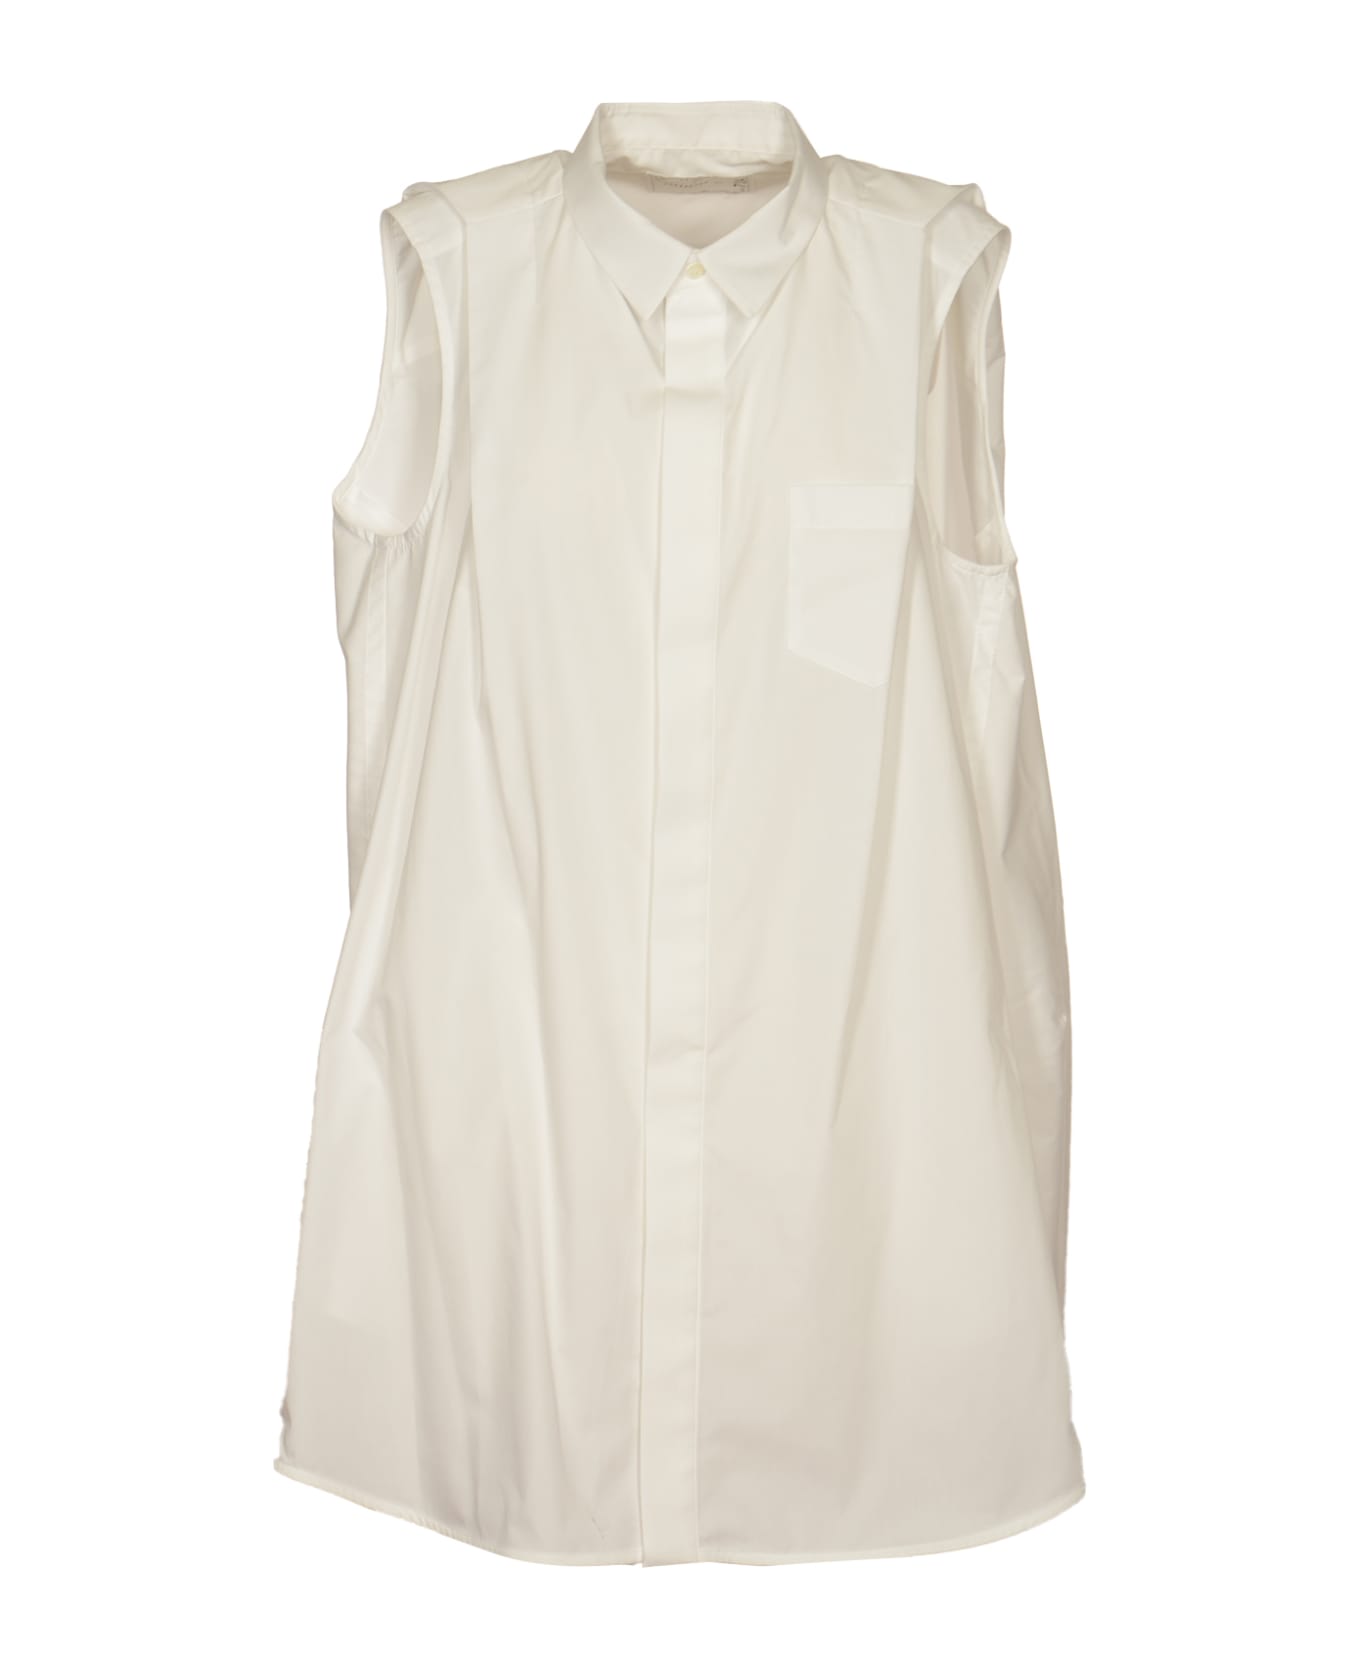 Sacai Sleeveless Shirt - White ブラウス